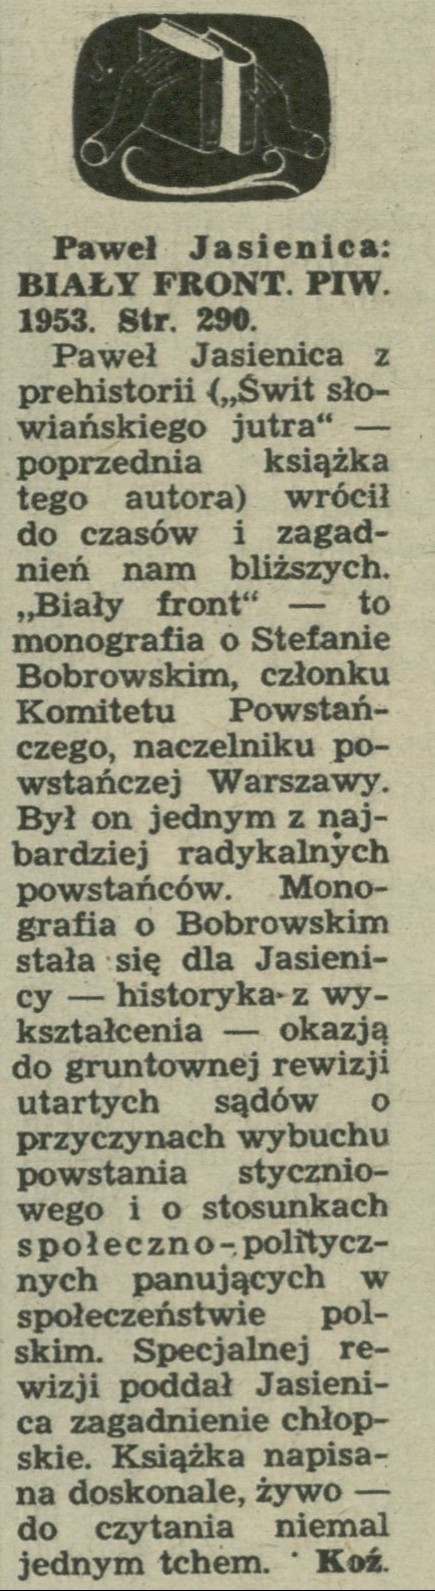 Paweł Jasienica "Biały front"